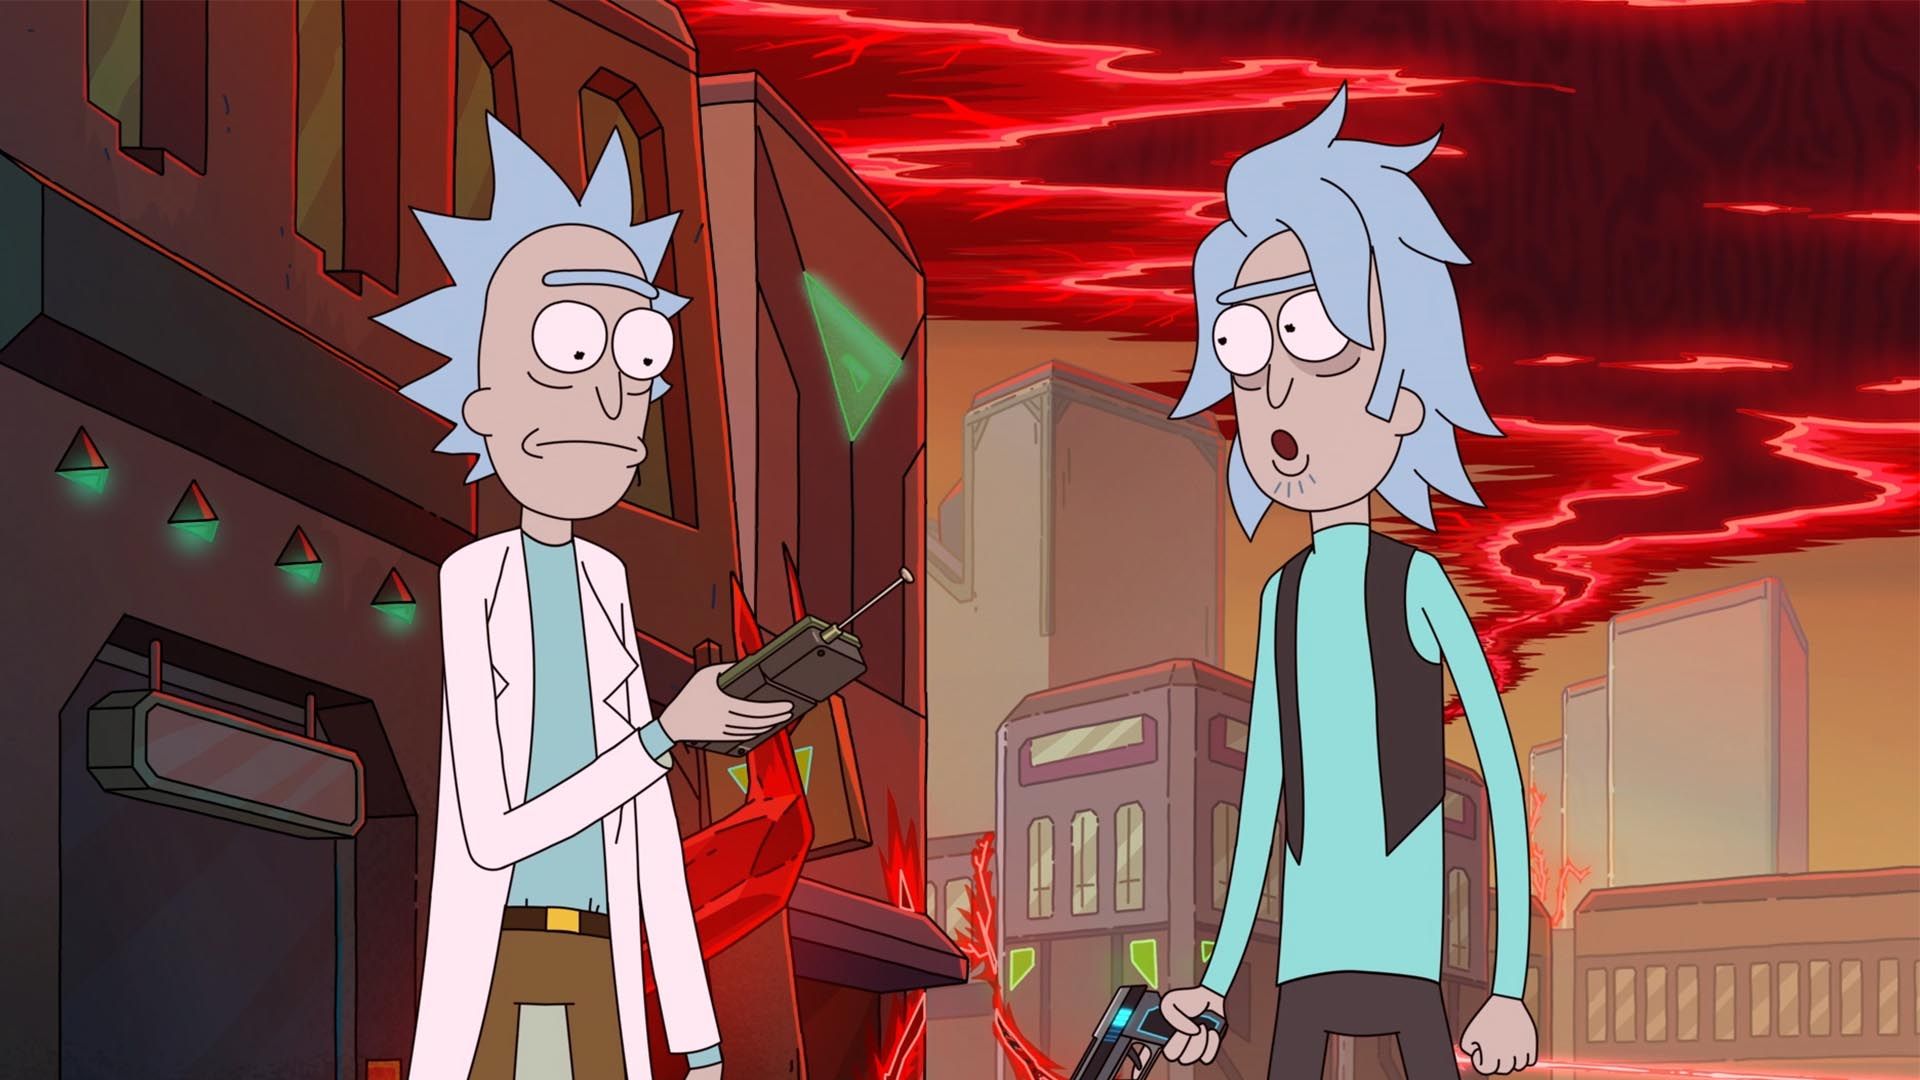 Rick and morty season 5